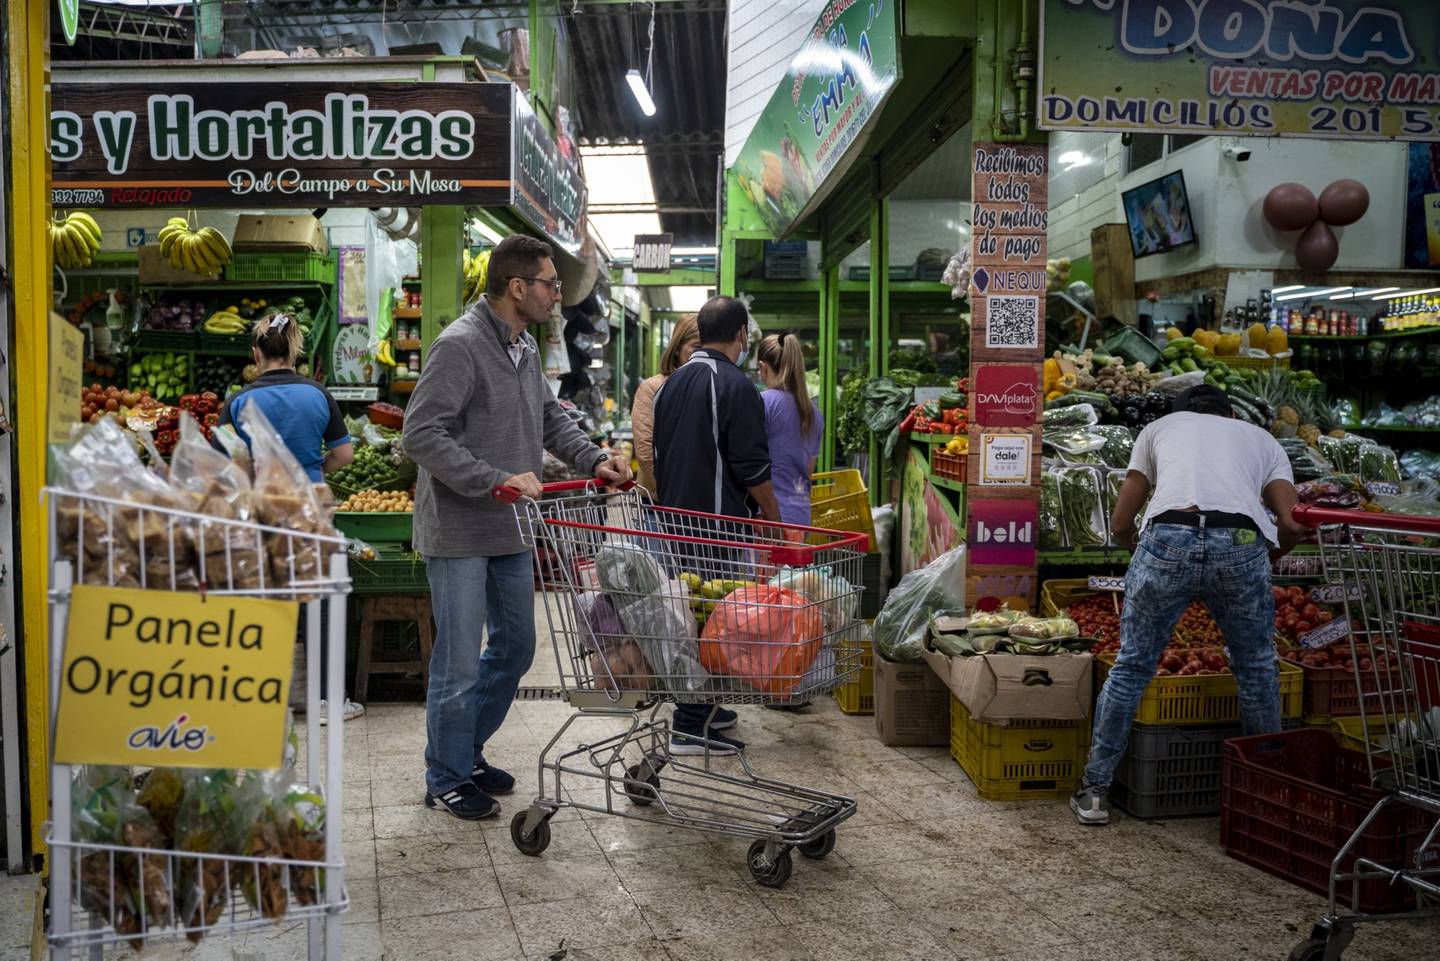 Compradores en un mercado de alimentos en Bogotá, Colombia, el jueves 30 de marzo de 2023. Se espera que el Banco Central de Colombia publique la decisión sobre los tipos de interés, y los economistas esperan un aumento de los costes de endeudamiento. Fotógrafa: Nathalia Angarita/Bloomberg